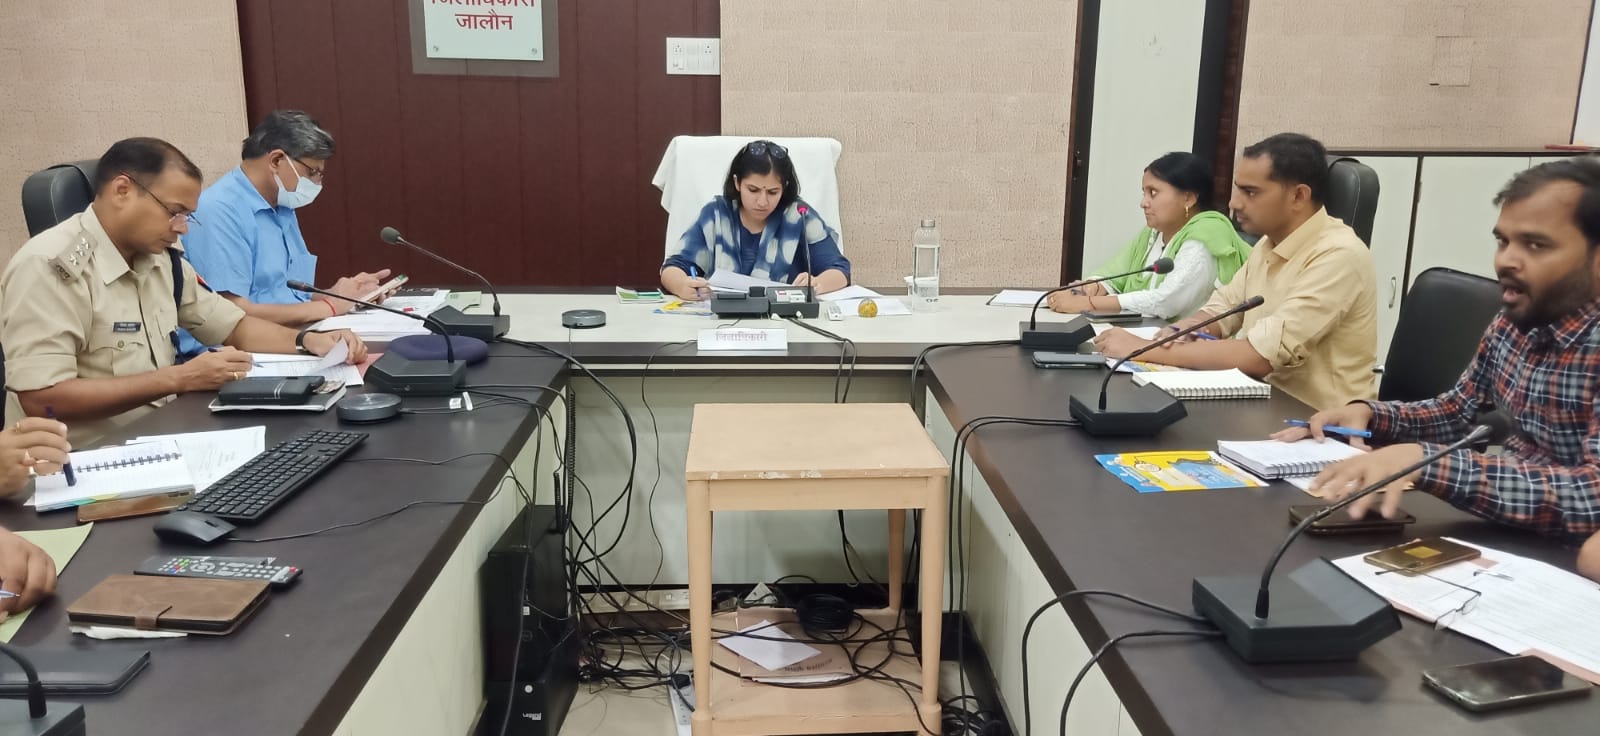 जालौन-जिलाधिकारी चाँदनी सिंह ने सड़क सुरक्षा अभियान के तहत की गई कार्यवाही की समीक्षा बैठक कलेक्ट्रेट सभागार में की गई।